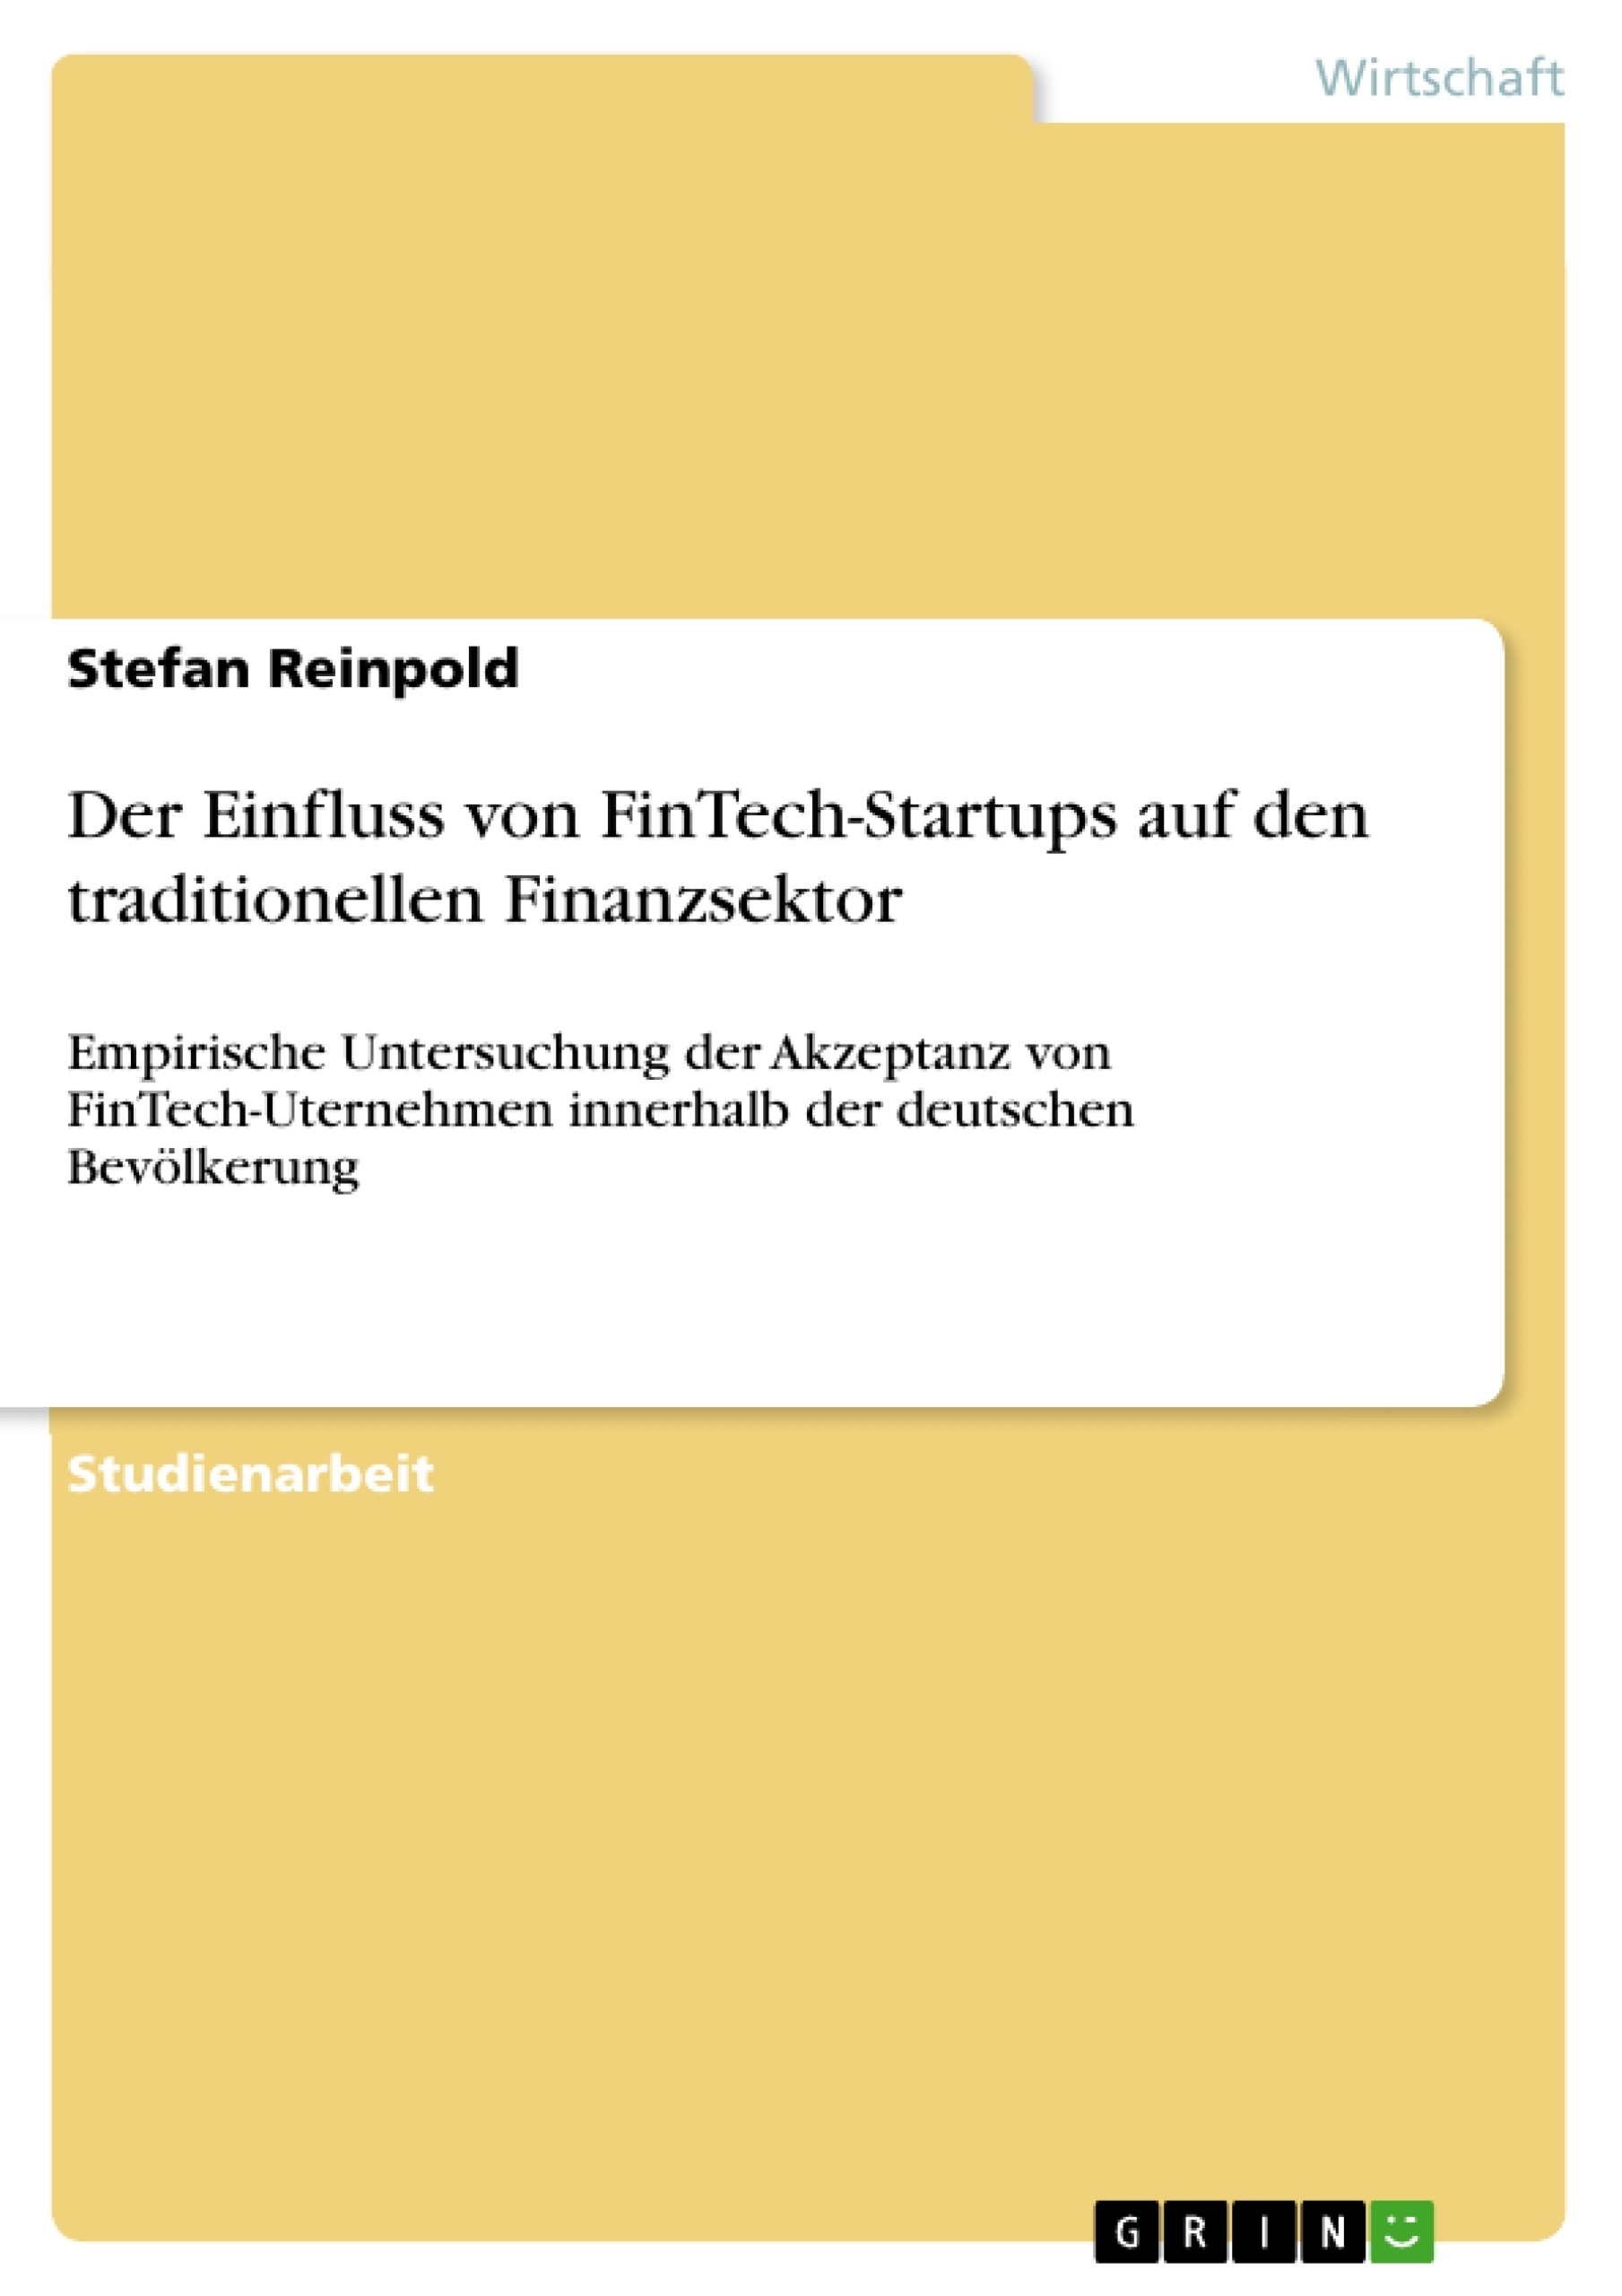 Title: Der Einfluss von FinTech-Startups auf den traditionellen Finanzsektor